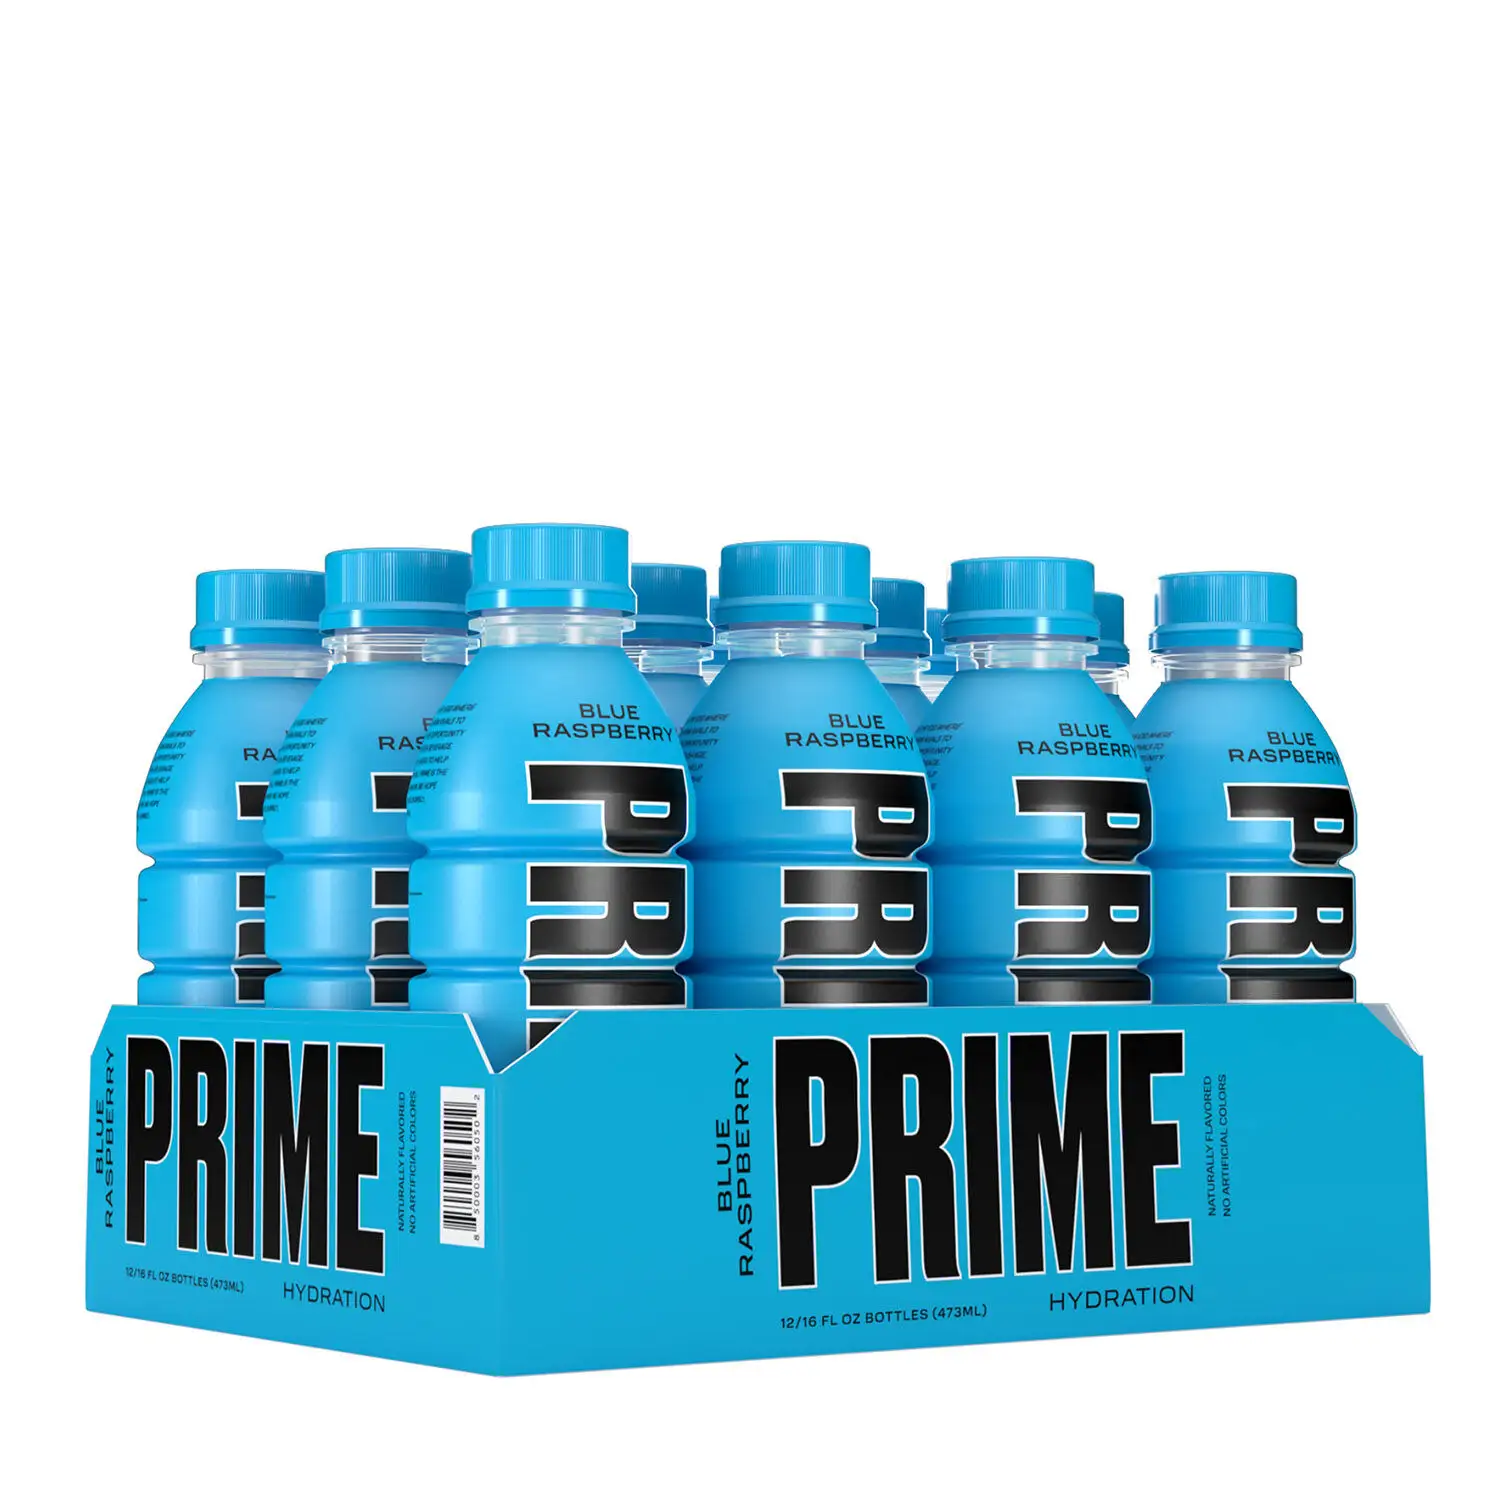 Bebida energética Prime, bebida de hidratación PRIME por KSI x Logan Paul (500ml), precio de distribución al por mayor